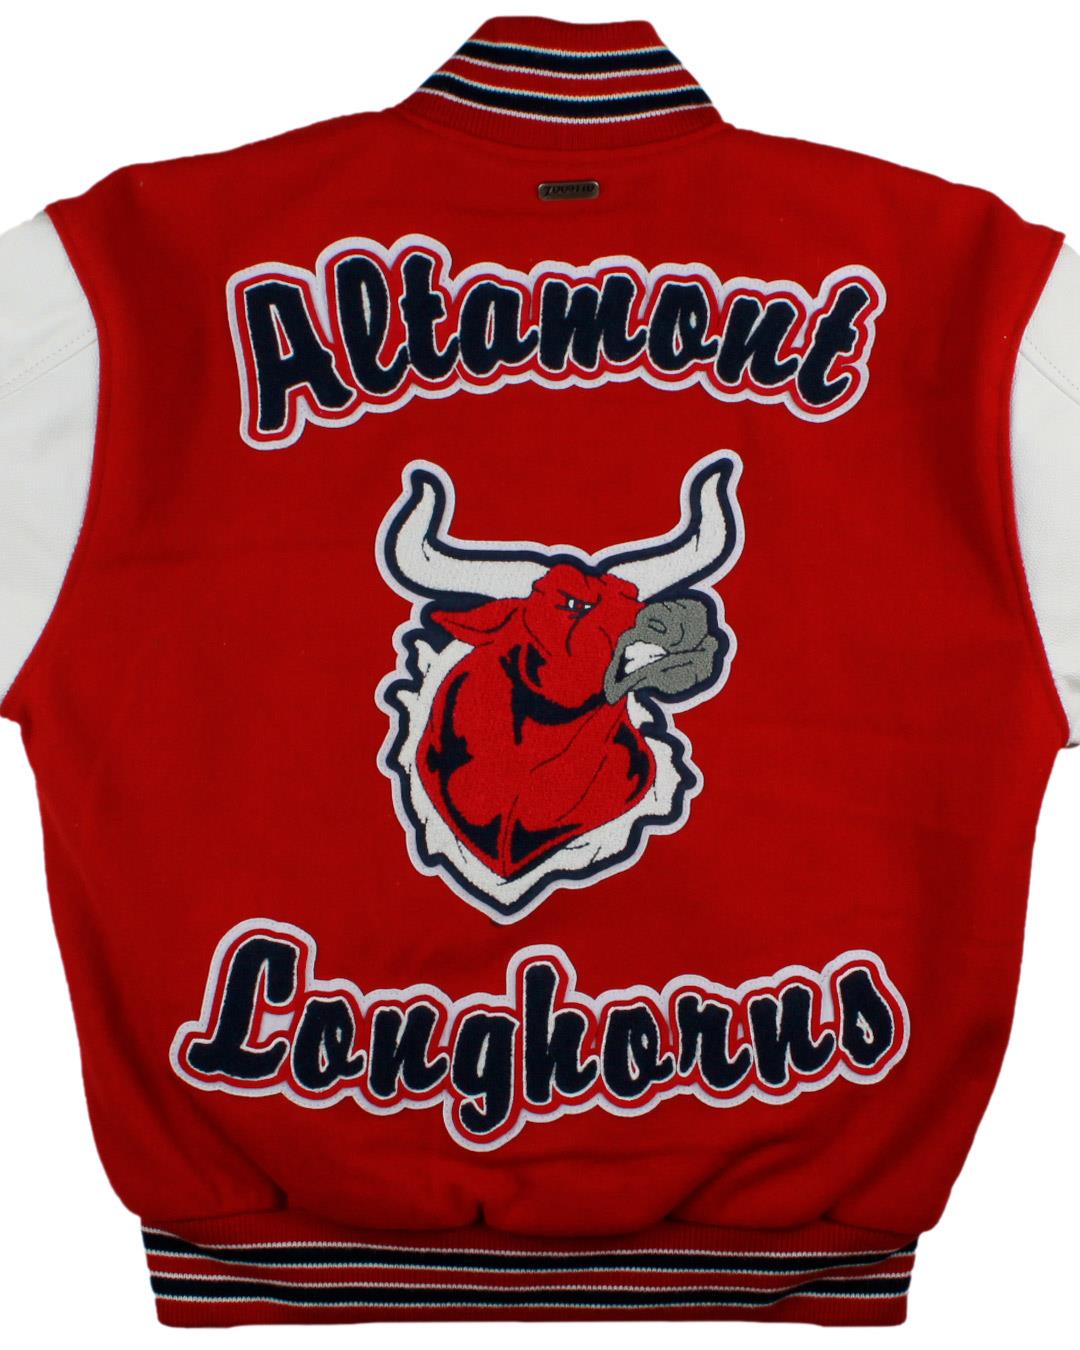 Altamont High School Letterman, Altamont, UT - Back